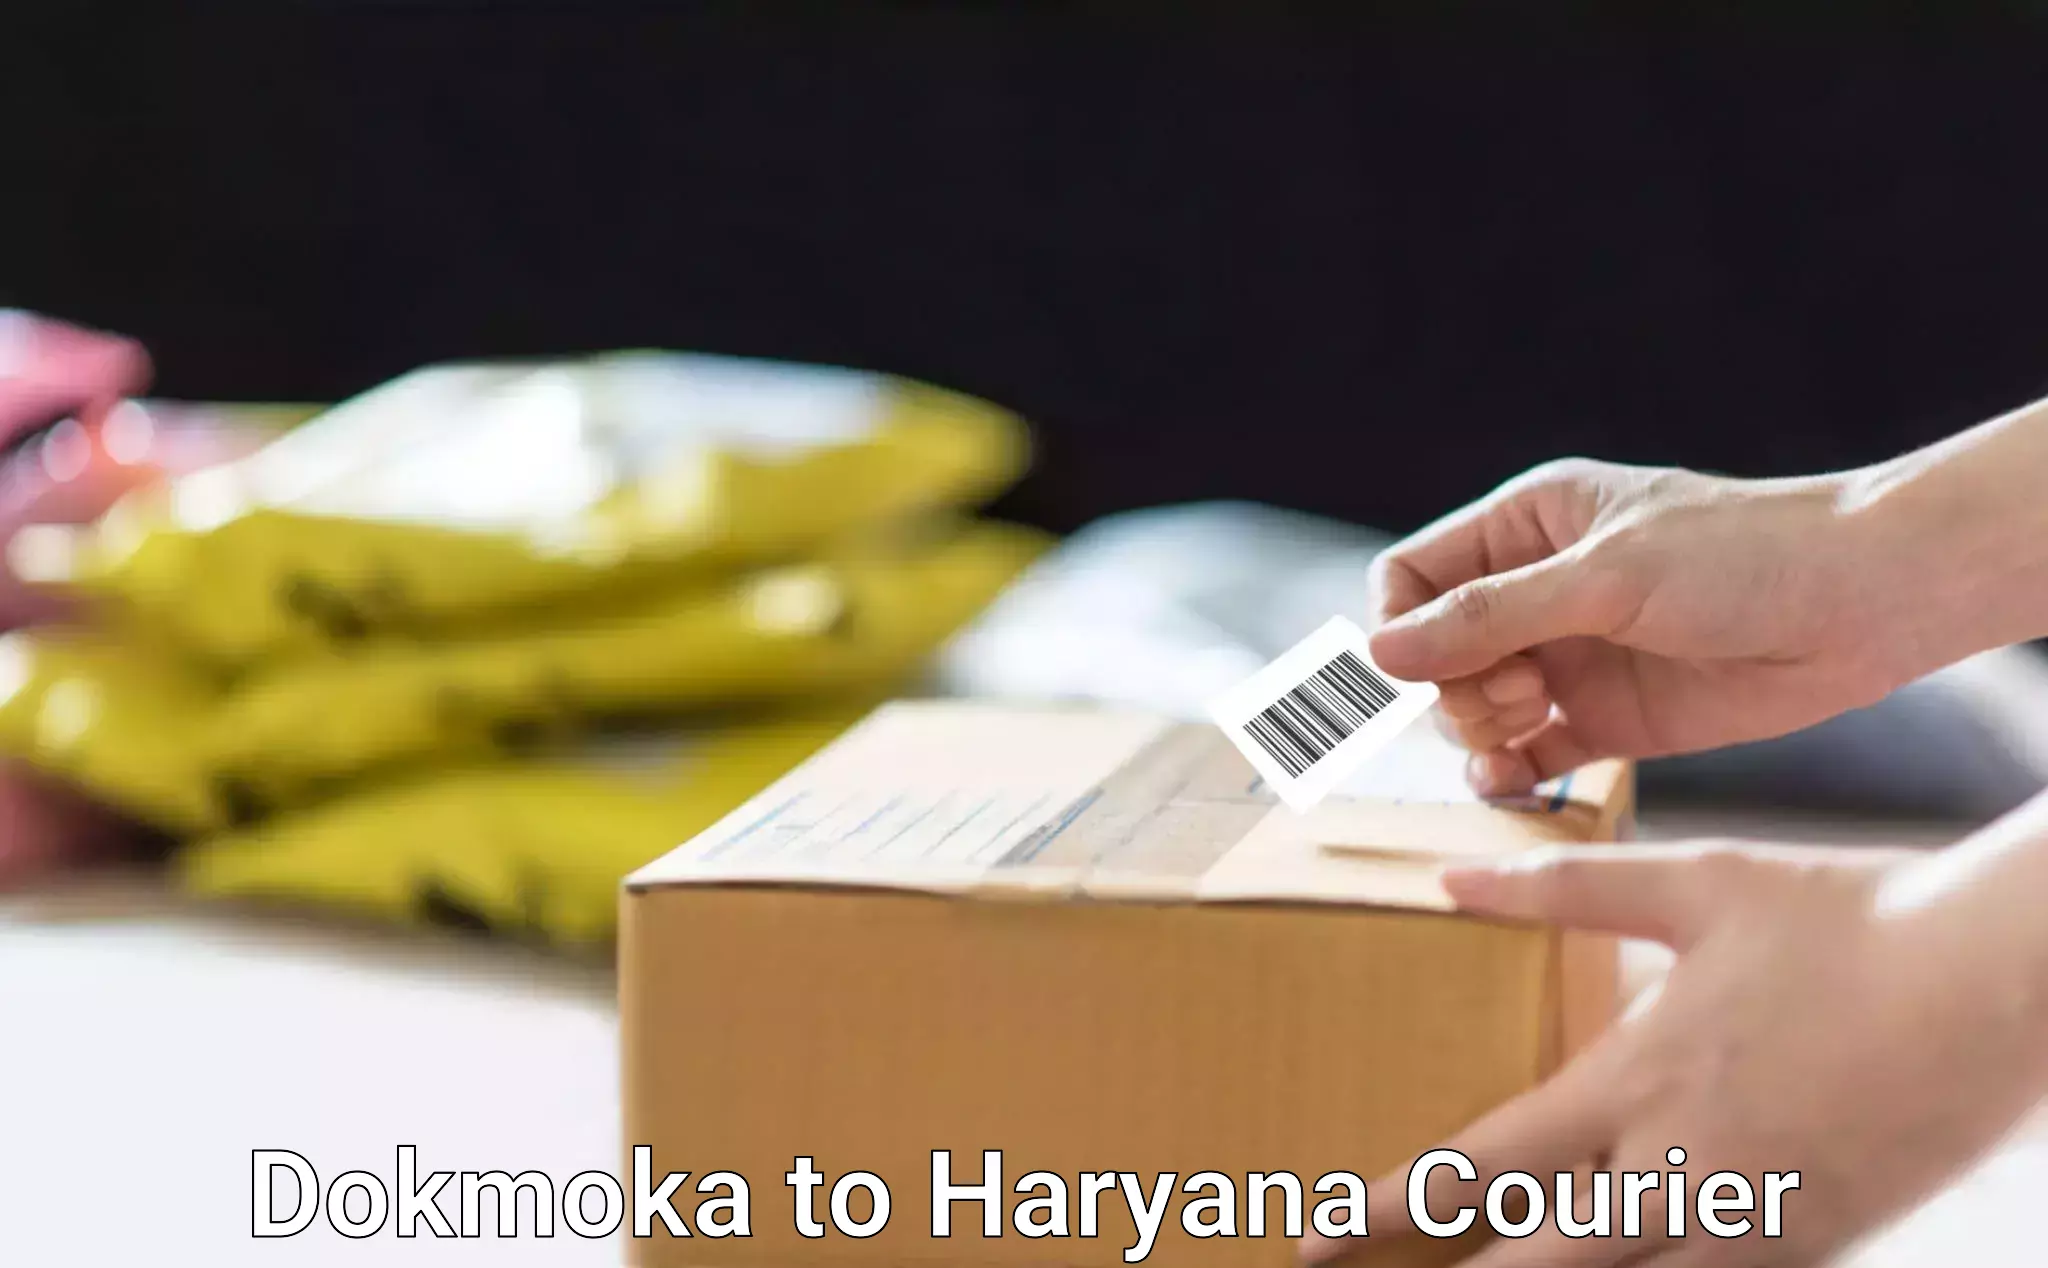 Enhanced delivery experience Dokmoka to Haryana